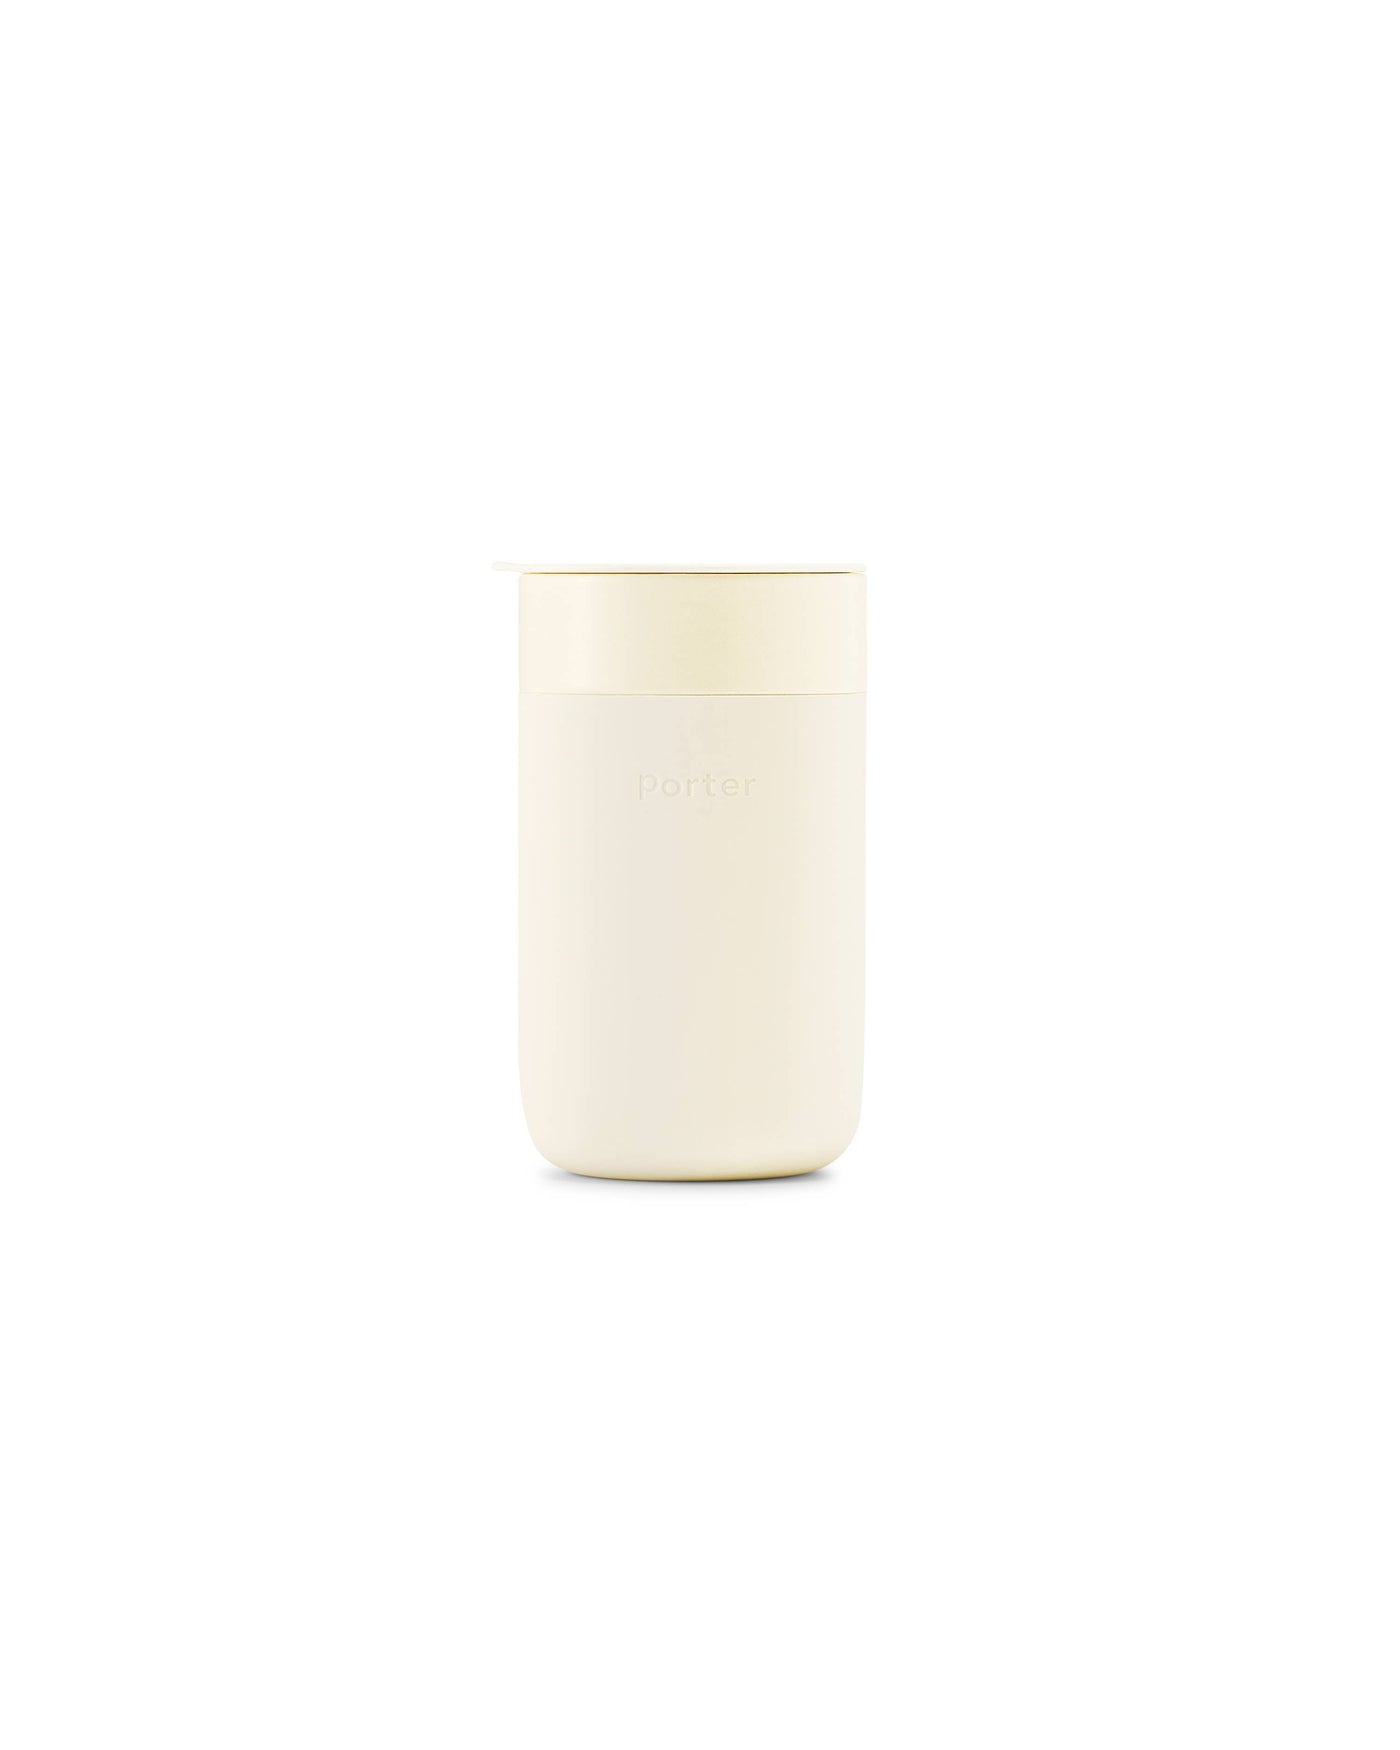 Porter Ceramic Mug 16oz